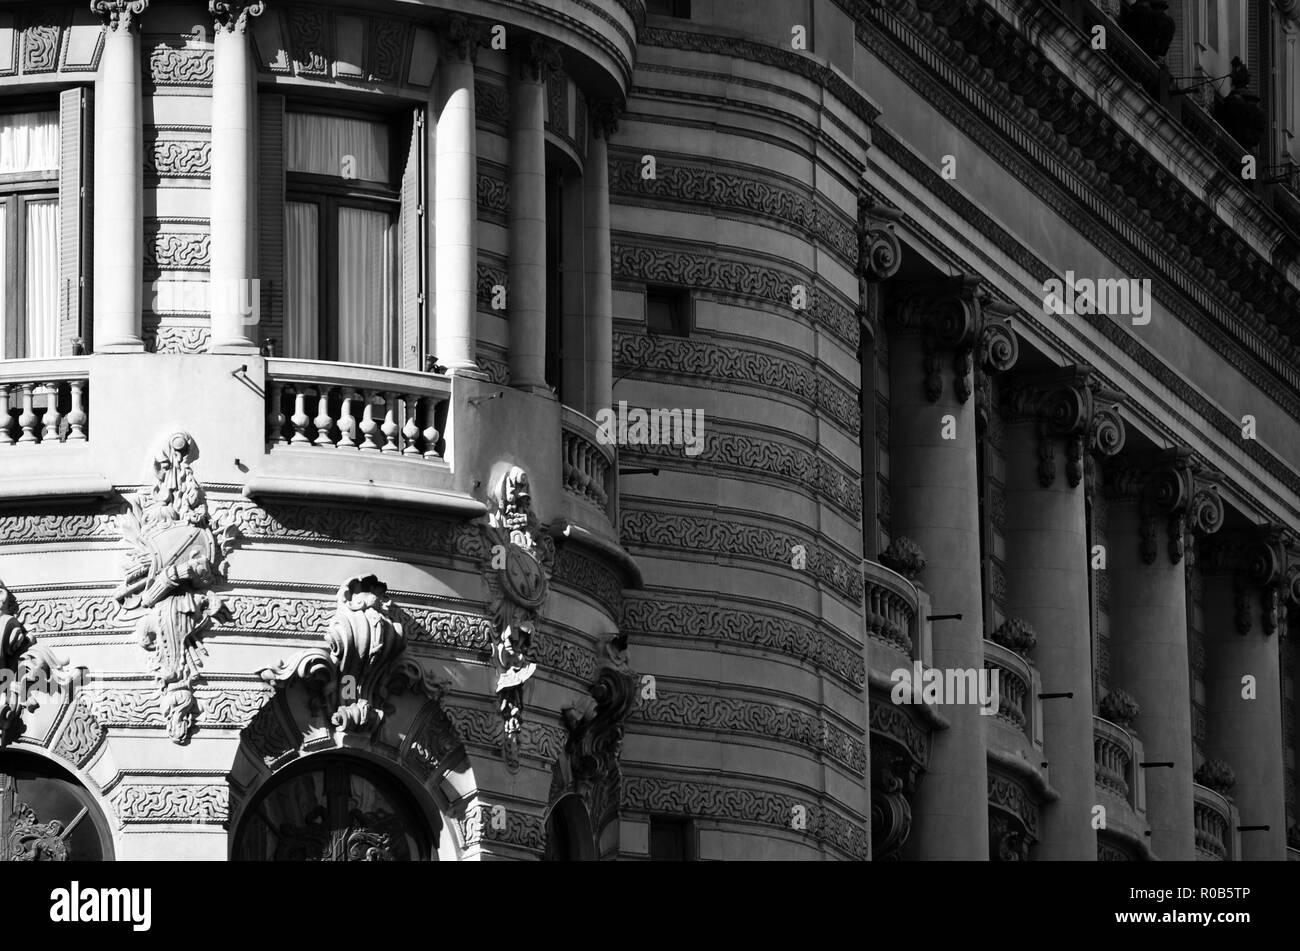 Foto der Details in der Architektur der Stadt Buenos Aires, mit natürlichem Licht. Mit schönen Kontrast zwischen Licht und Schatten. Stockfoto